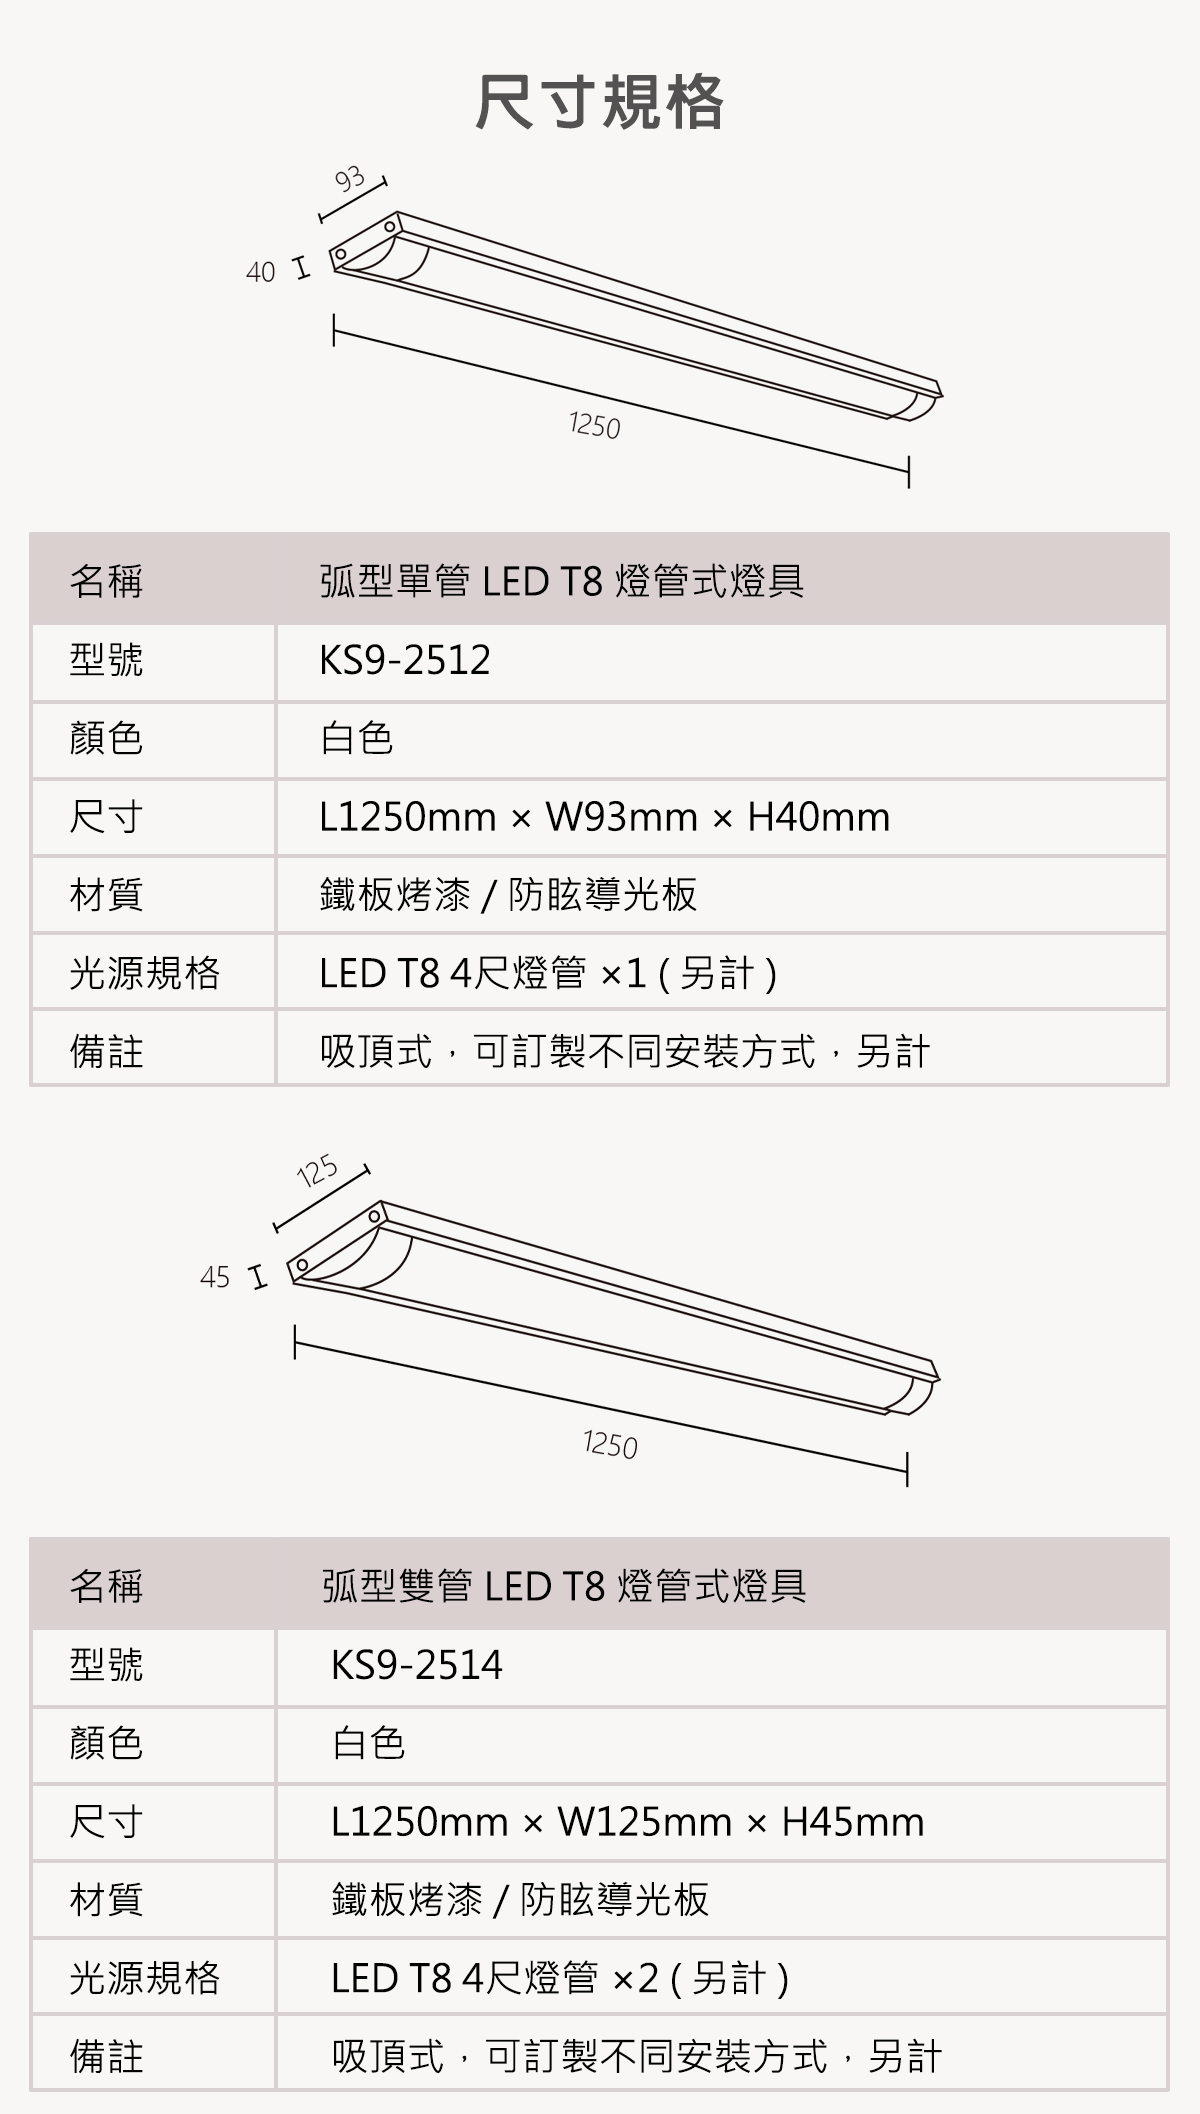 【KAO'S】LED T8 弧型燈管吸頂式燈具 單管/雙管 燈管另計 可訂製吊管式-軌道式-吊線式